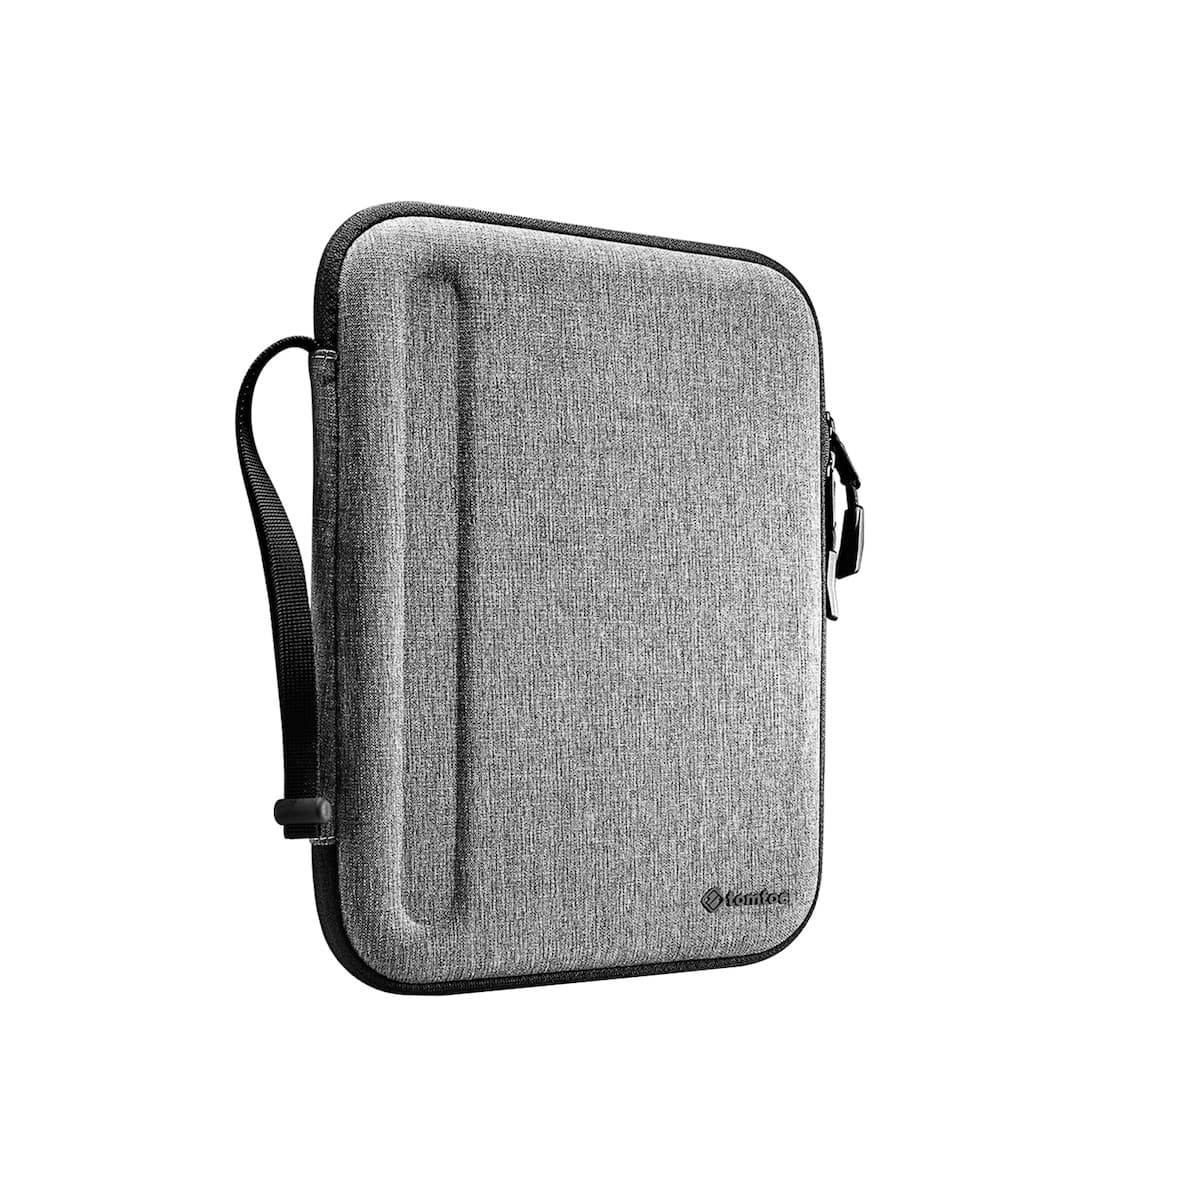 FancyCase-A06 Portfolio iPad Tasche für 11-Zoll iPad Air/Pro | Lite